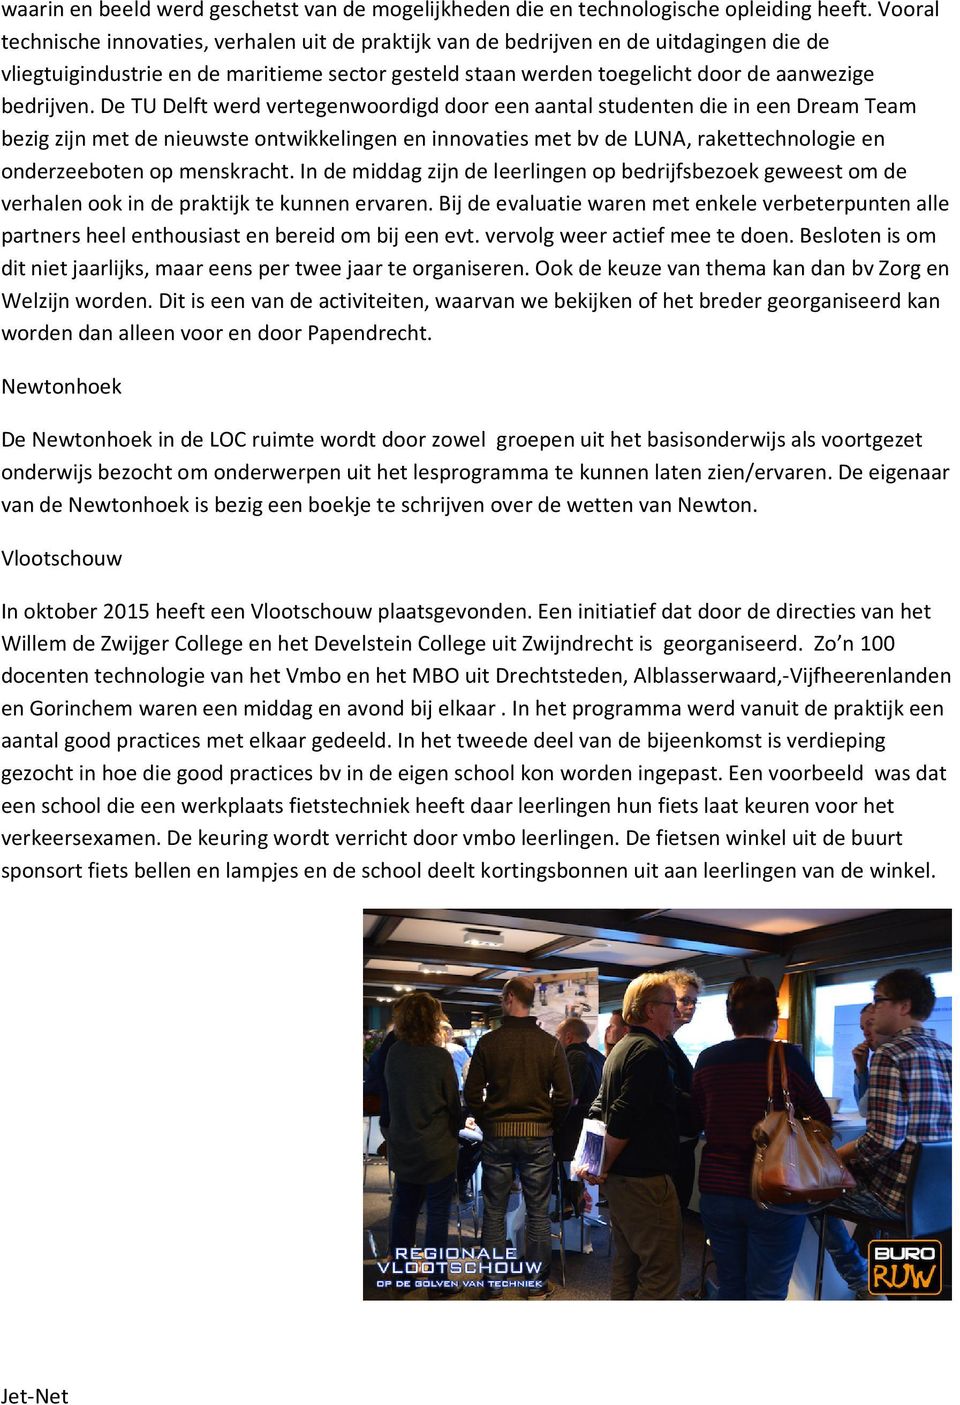 De TU Delft werd vertegenwoordigd door een aantal studenten die in een Dream Team bezig zijn met de nieuwste ontwikkelingen en innovaties met bv de LUNA, rakettechnologie en onderzeeboten op